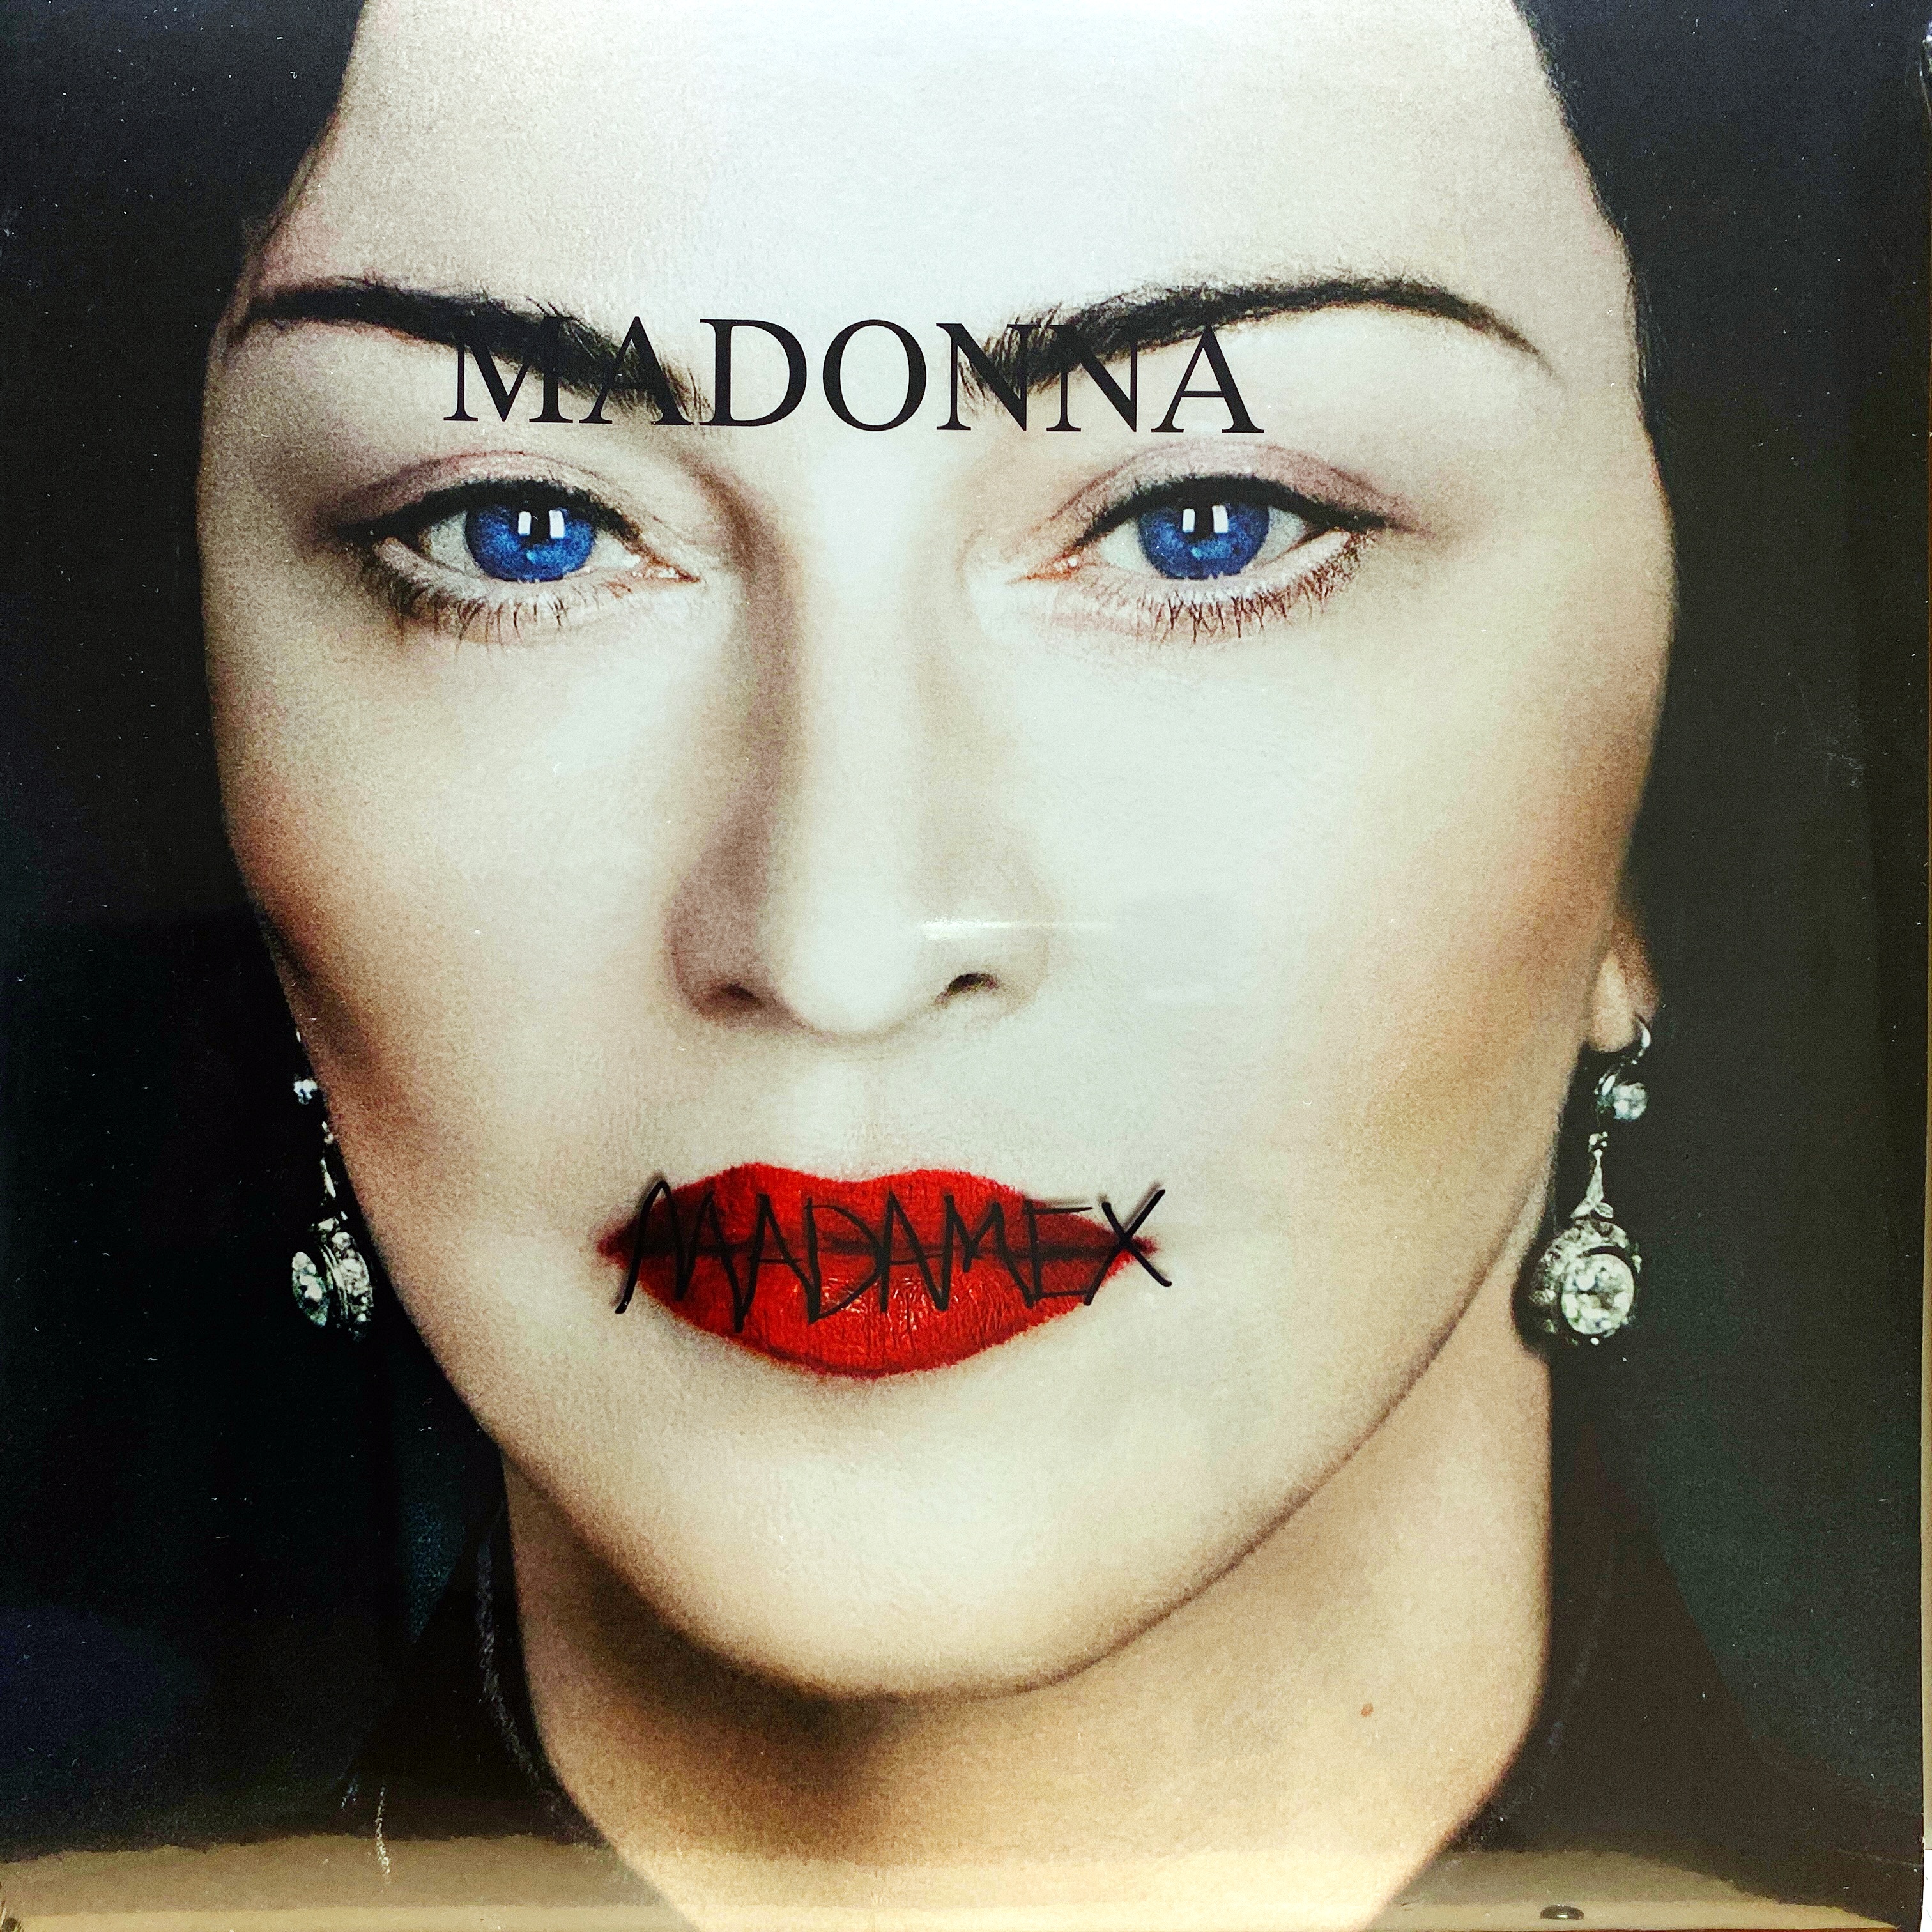 2xLP Madonna – Madame X